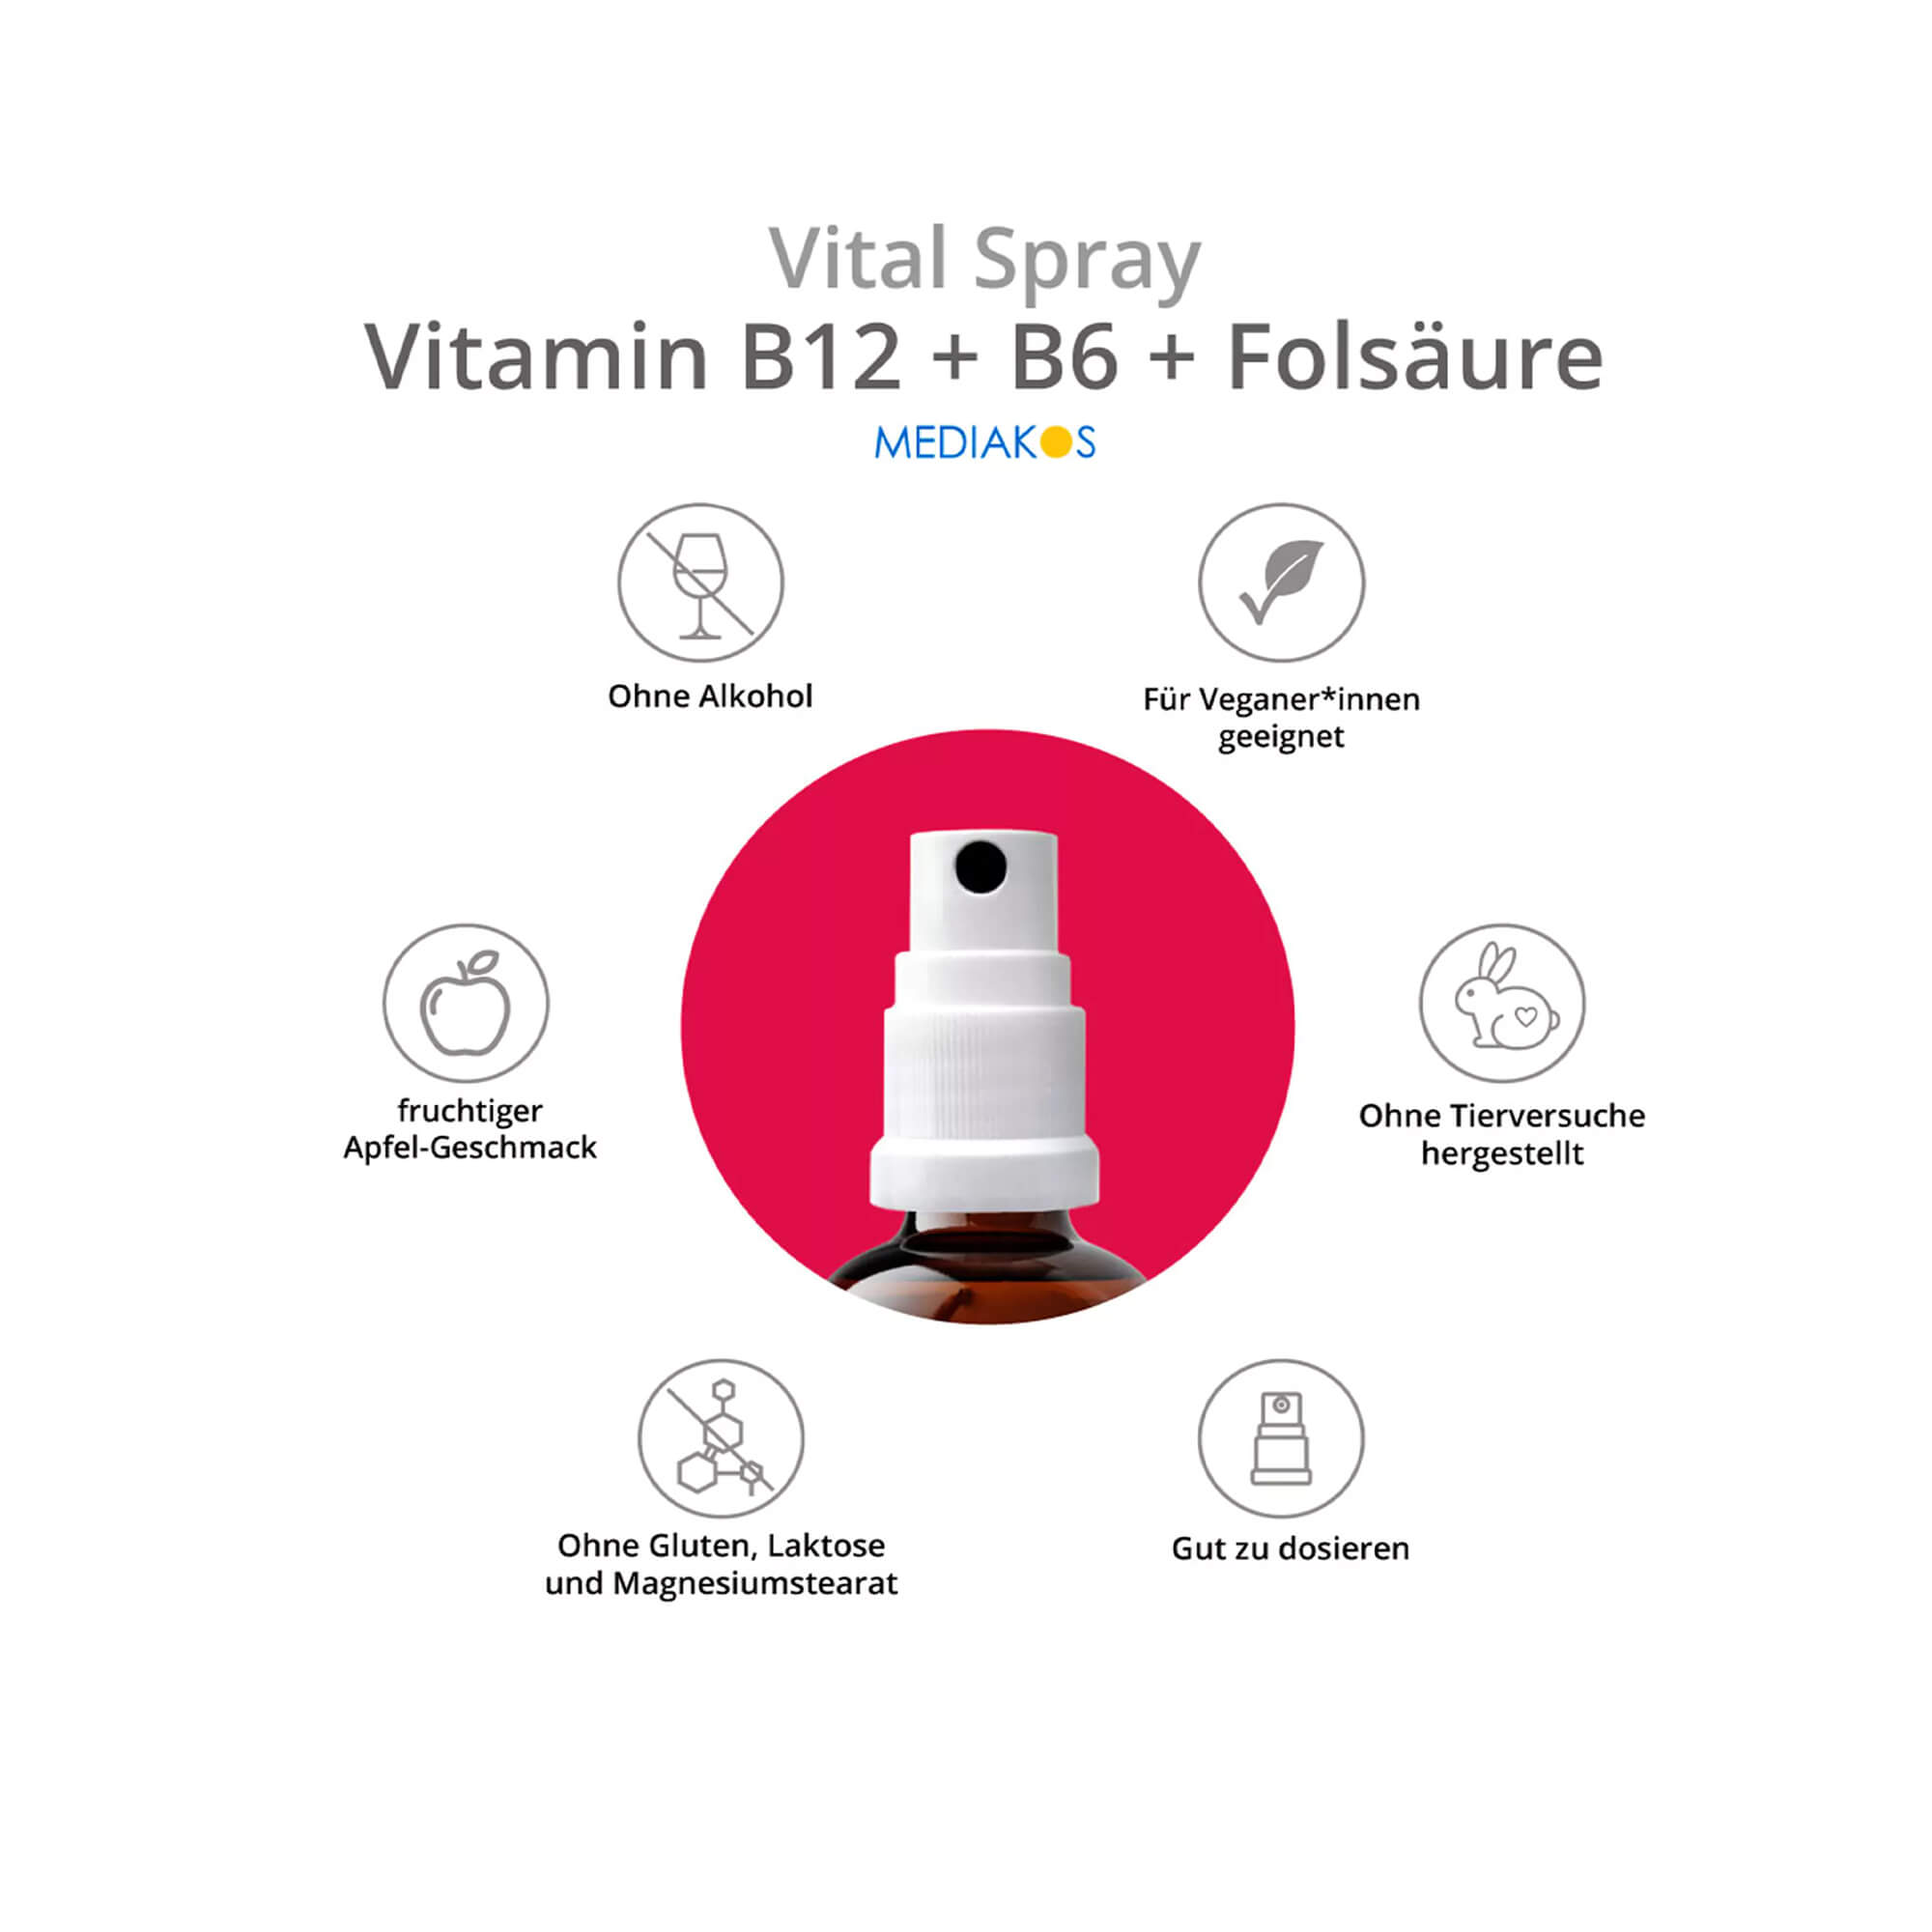 Mediakos Vitamin B12+B6+Folsäure Vital Spray Eigenschaften